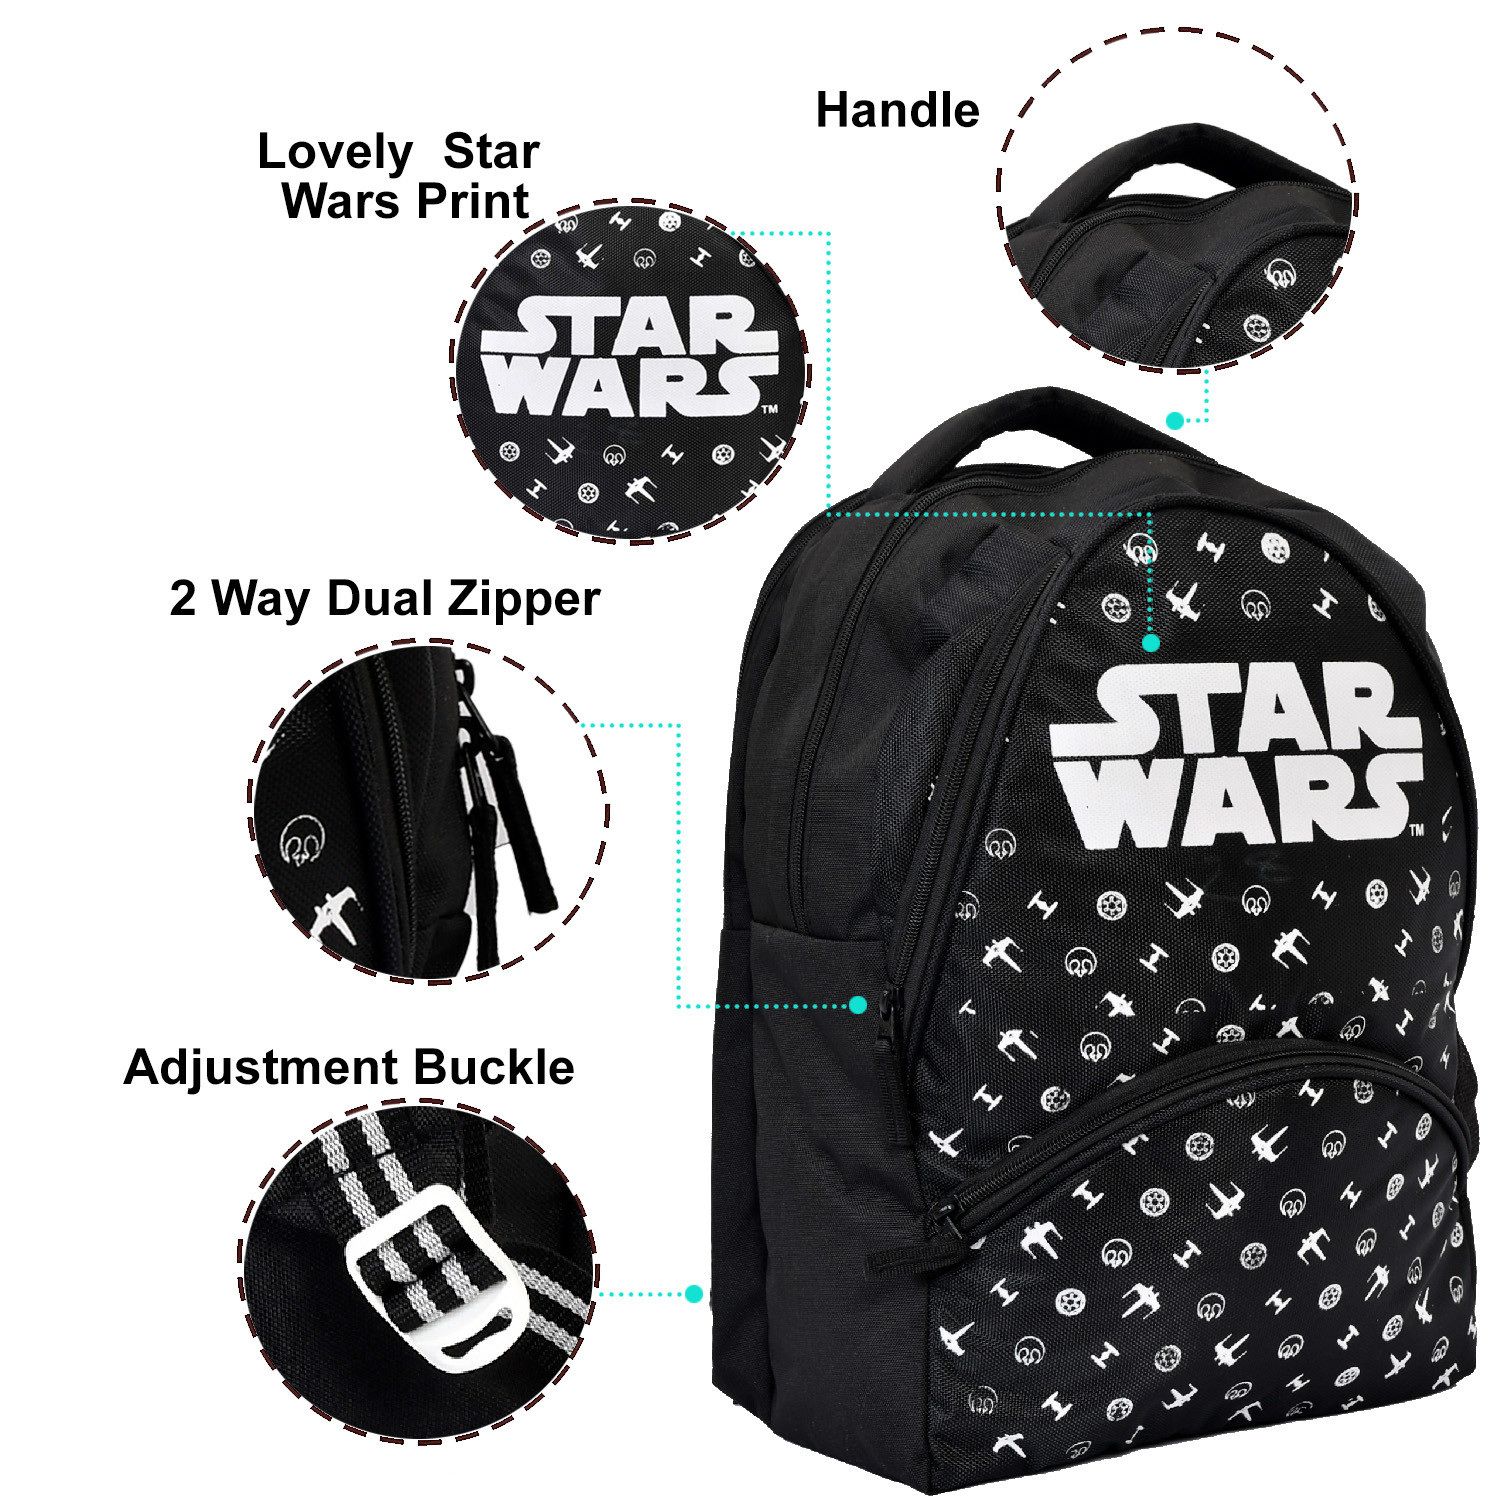 Kuber Industries Star Wars School Bag | Kids School Bags | Student Bookbag | Spacious School Bag | School Bag for Girls & Boys | School Backpack for Kids | 4 Compartments School Bag | Black